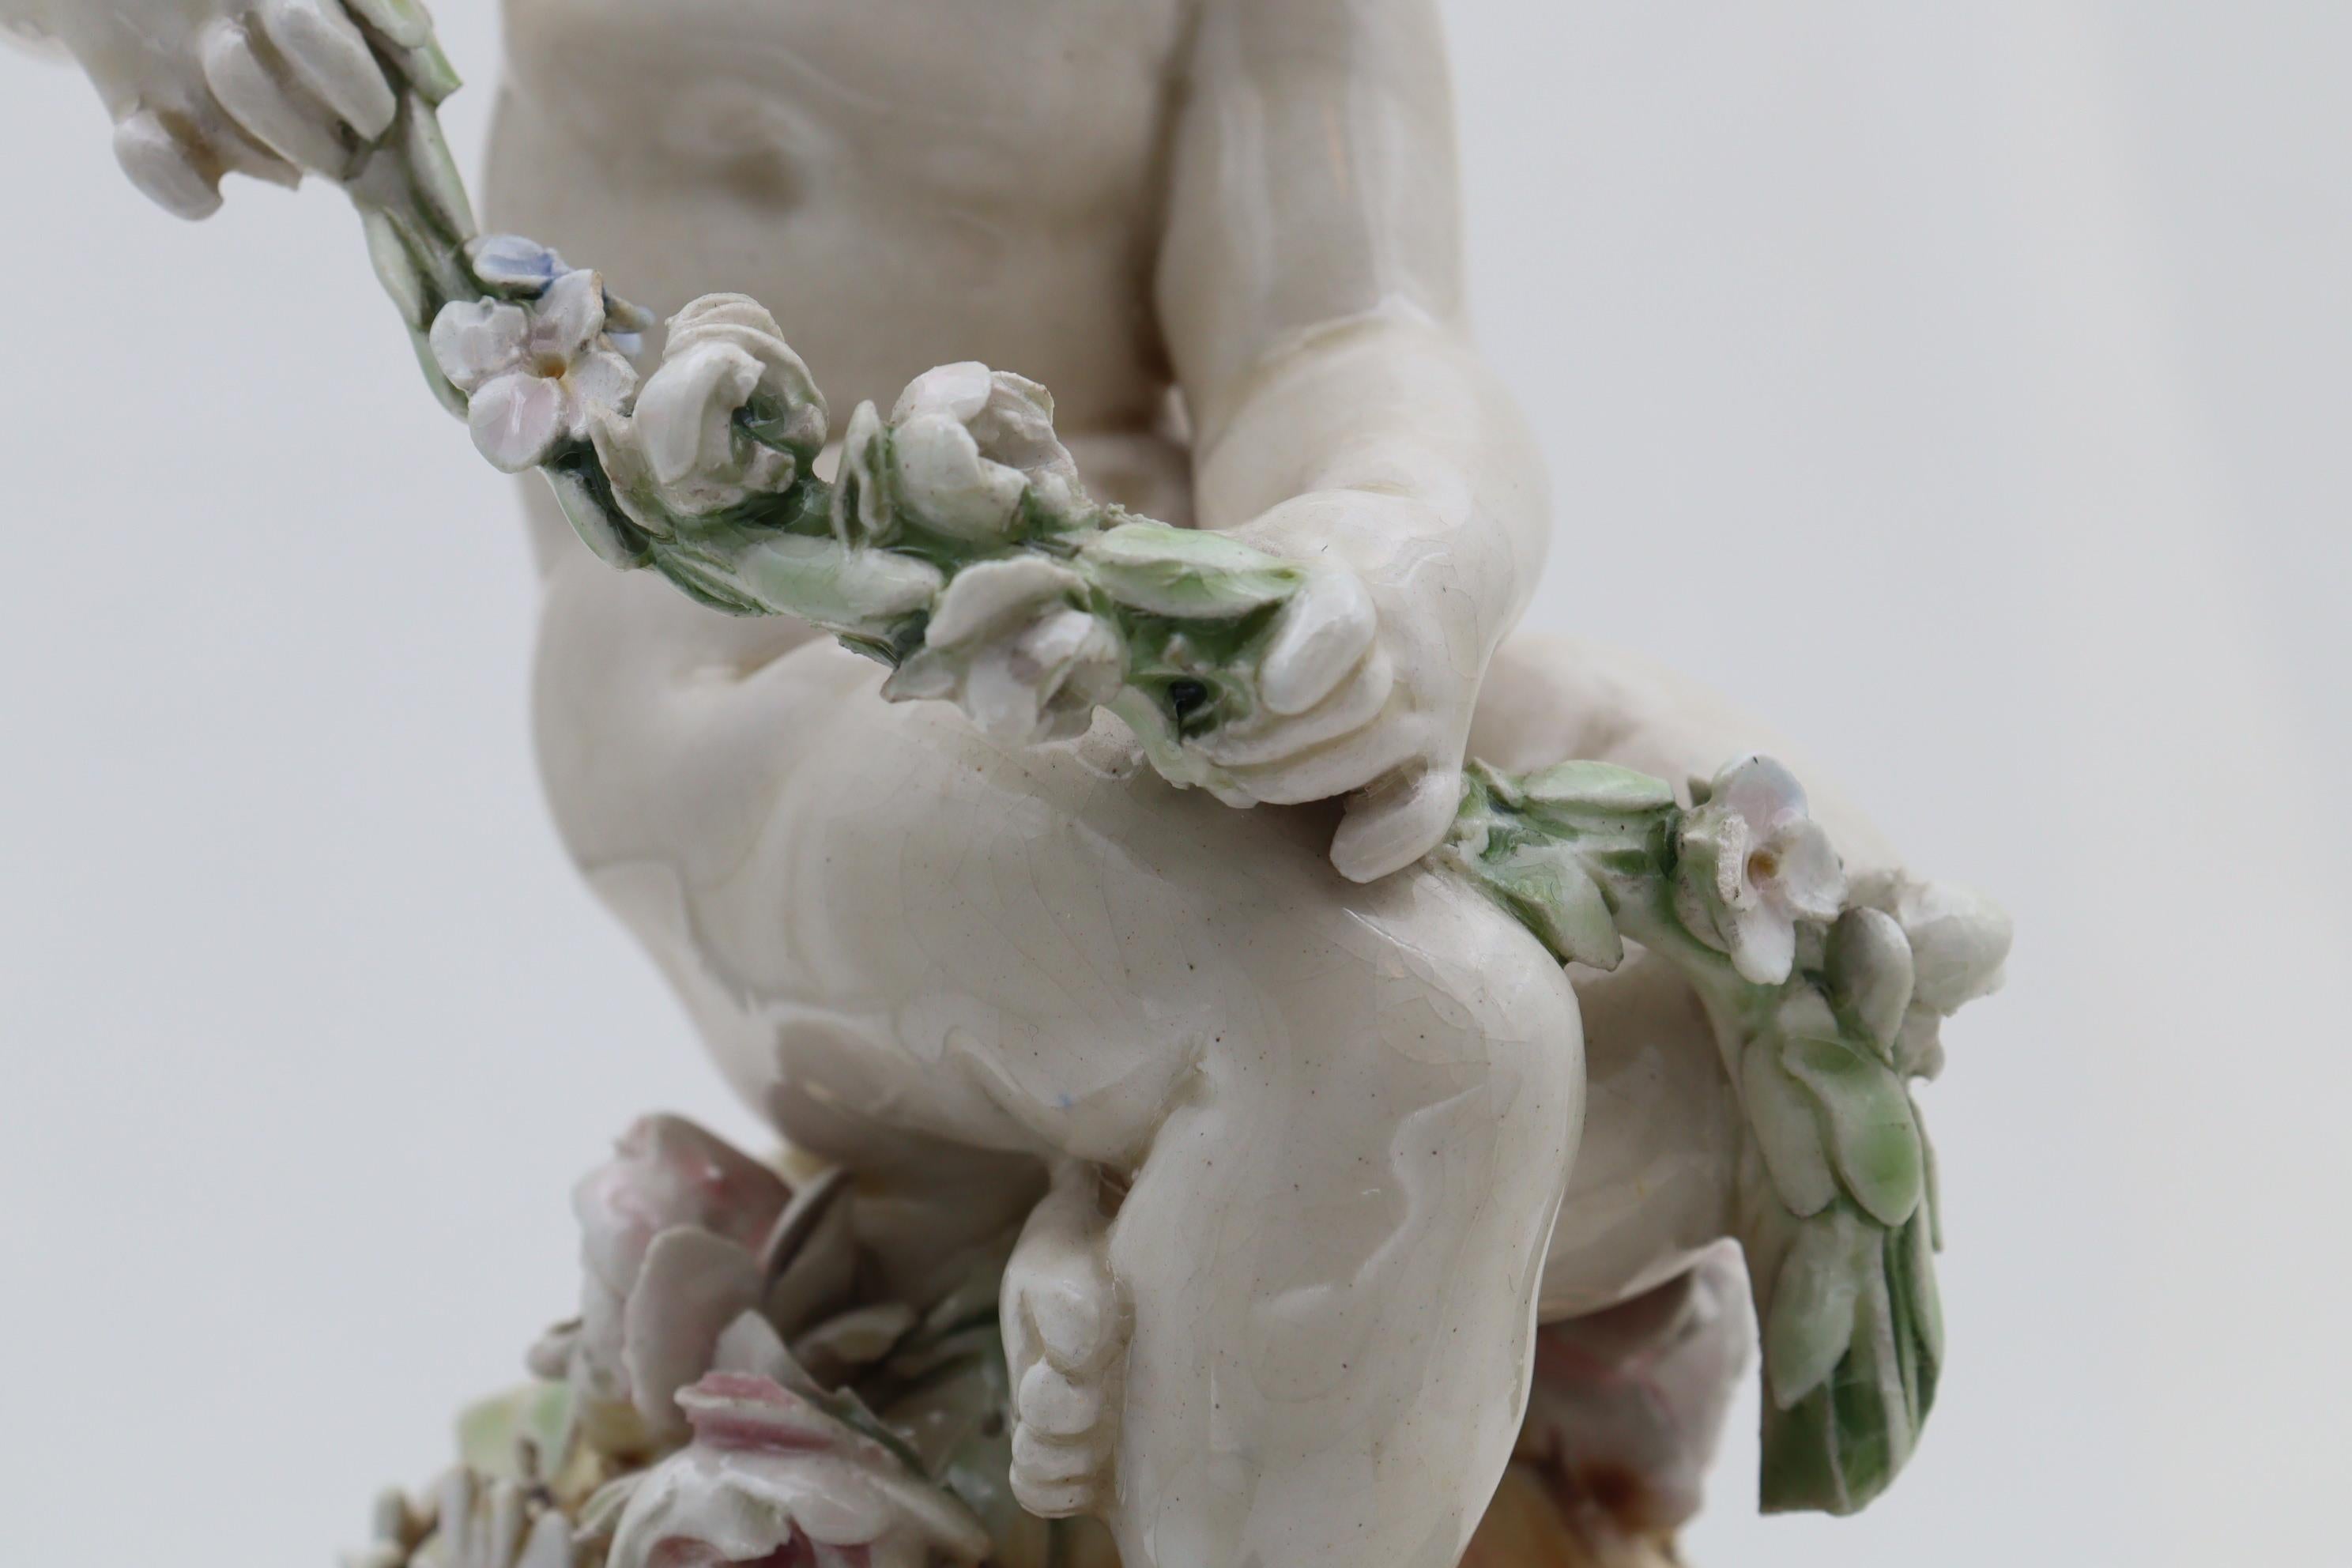 Poterie Figurine d'un chérubin par Louis Carrier-Belleuse